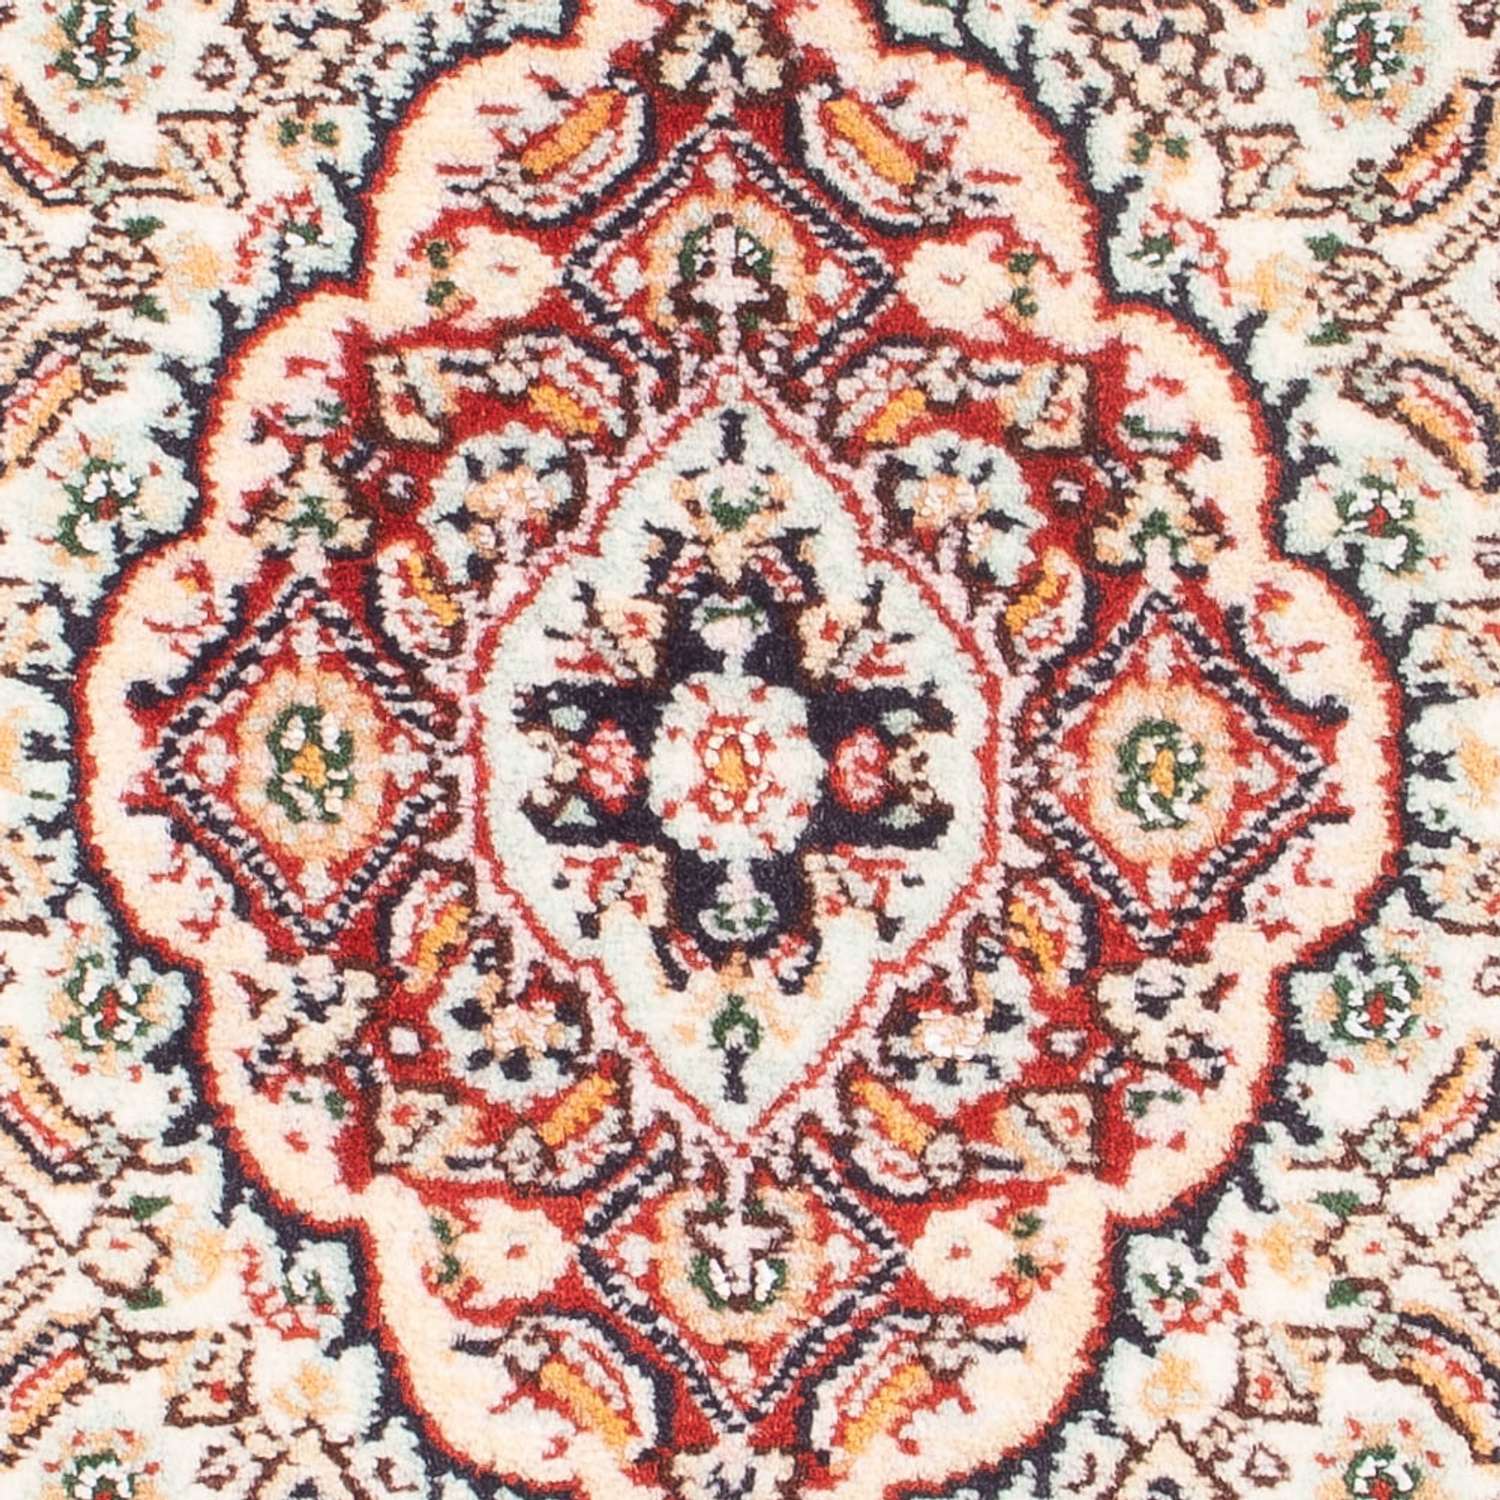 Perzisch tapijt - Klassiek - Koninklijke - 90 x 60 cm - licht rood